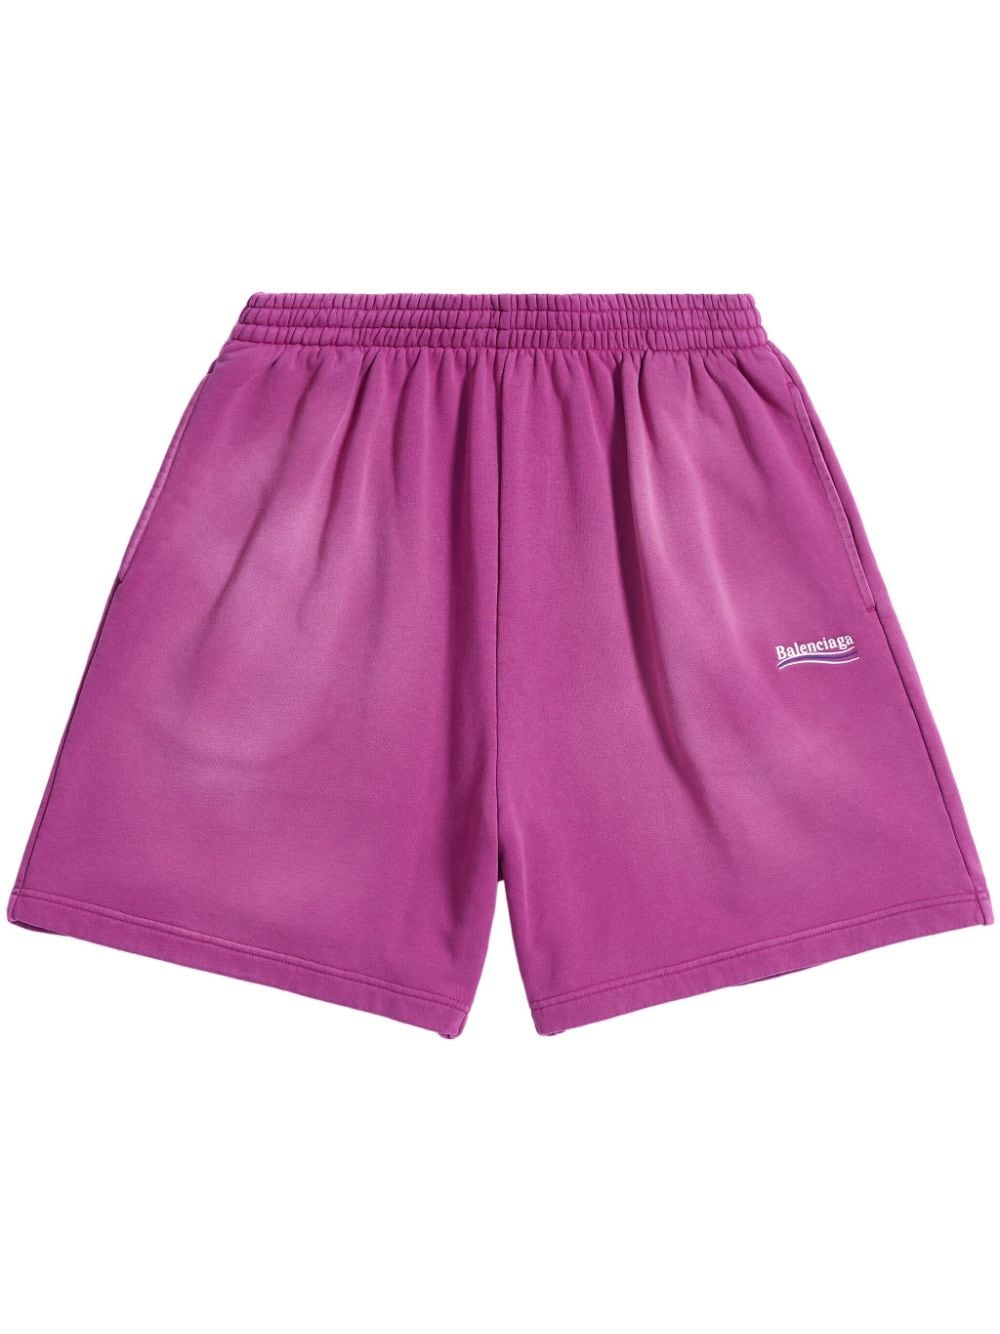 Balenciaga Political Campaign Fleece Track Shorts In Pink